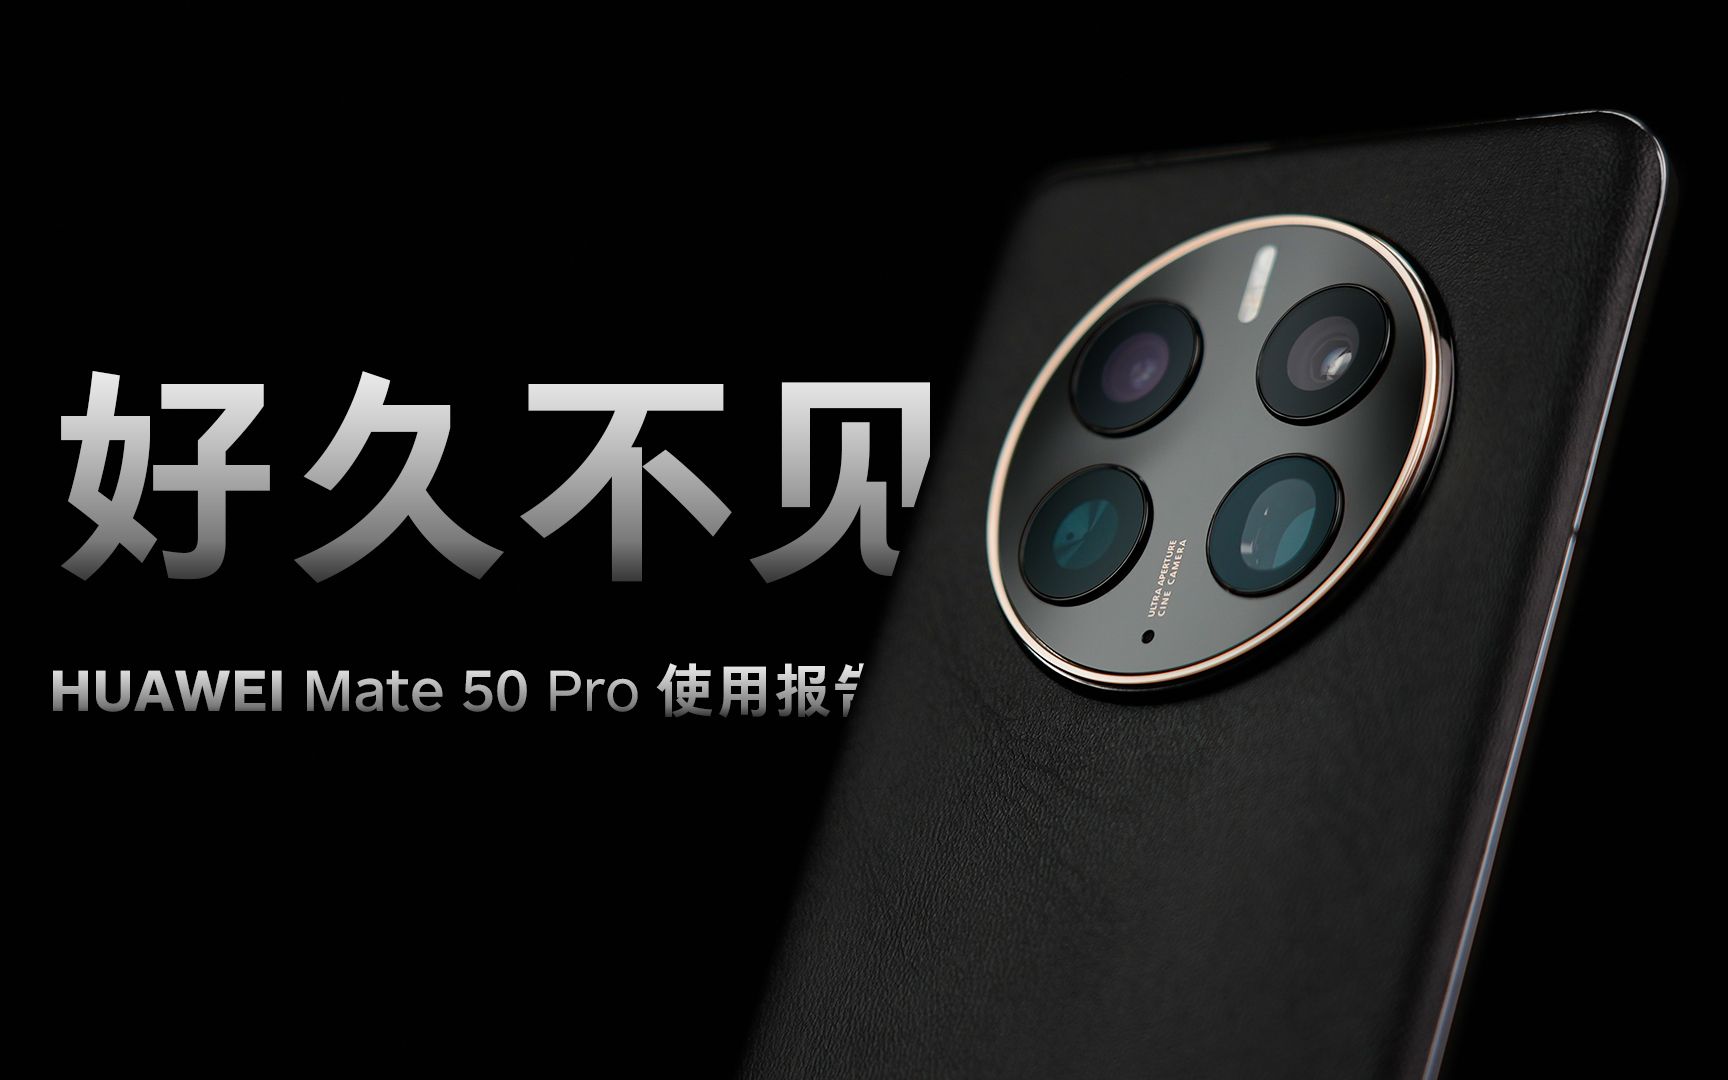 「花生」这或许是Mate 20 Pro完全体/华为Mate 50 Pro一周使用报告